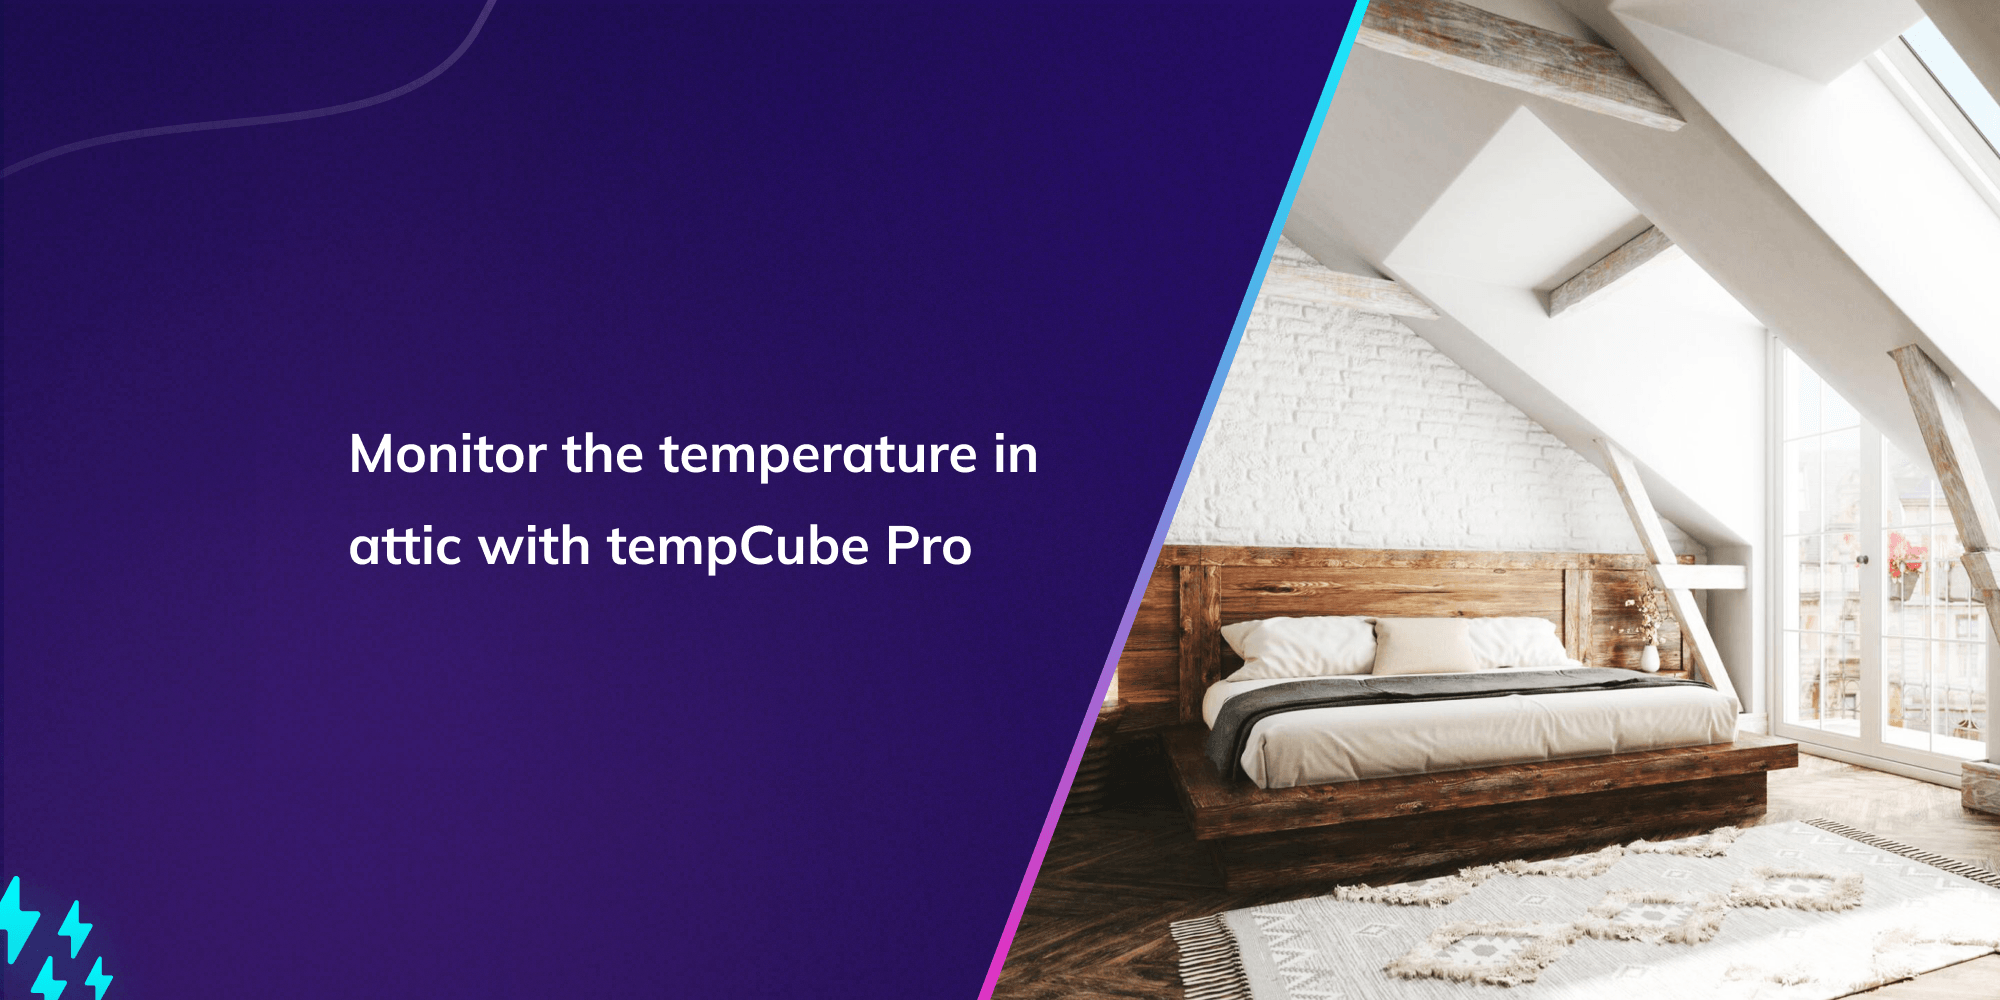 Monitor the temperature in attic with tempCube Pro